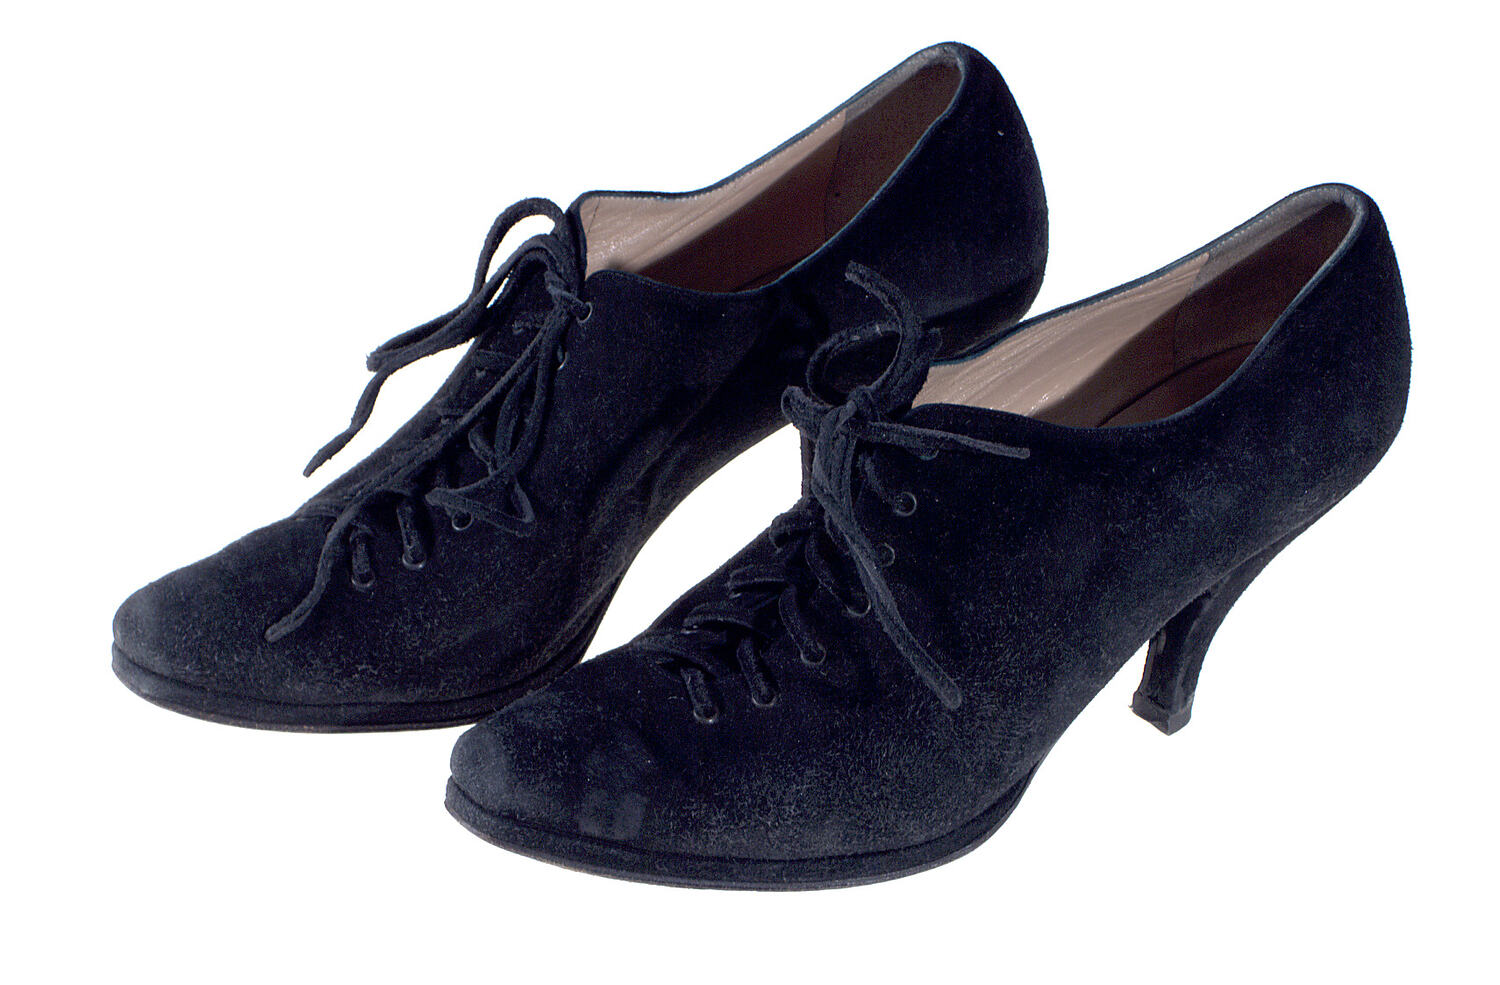 Shoes - Maud Frizon, Lace-up, Black Suede